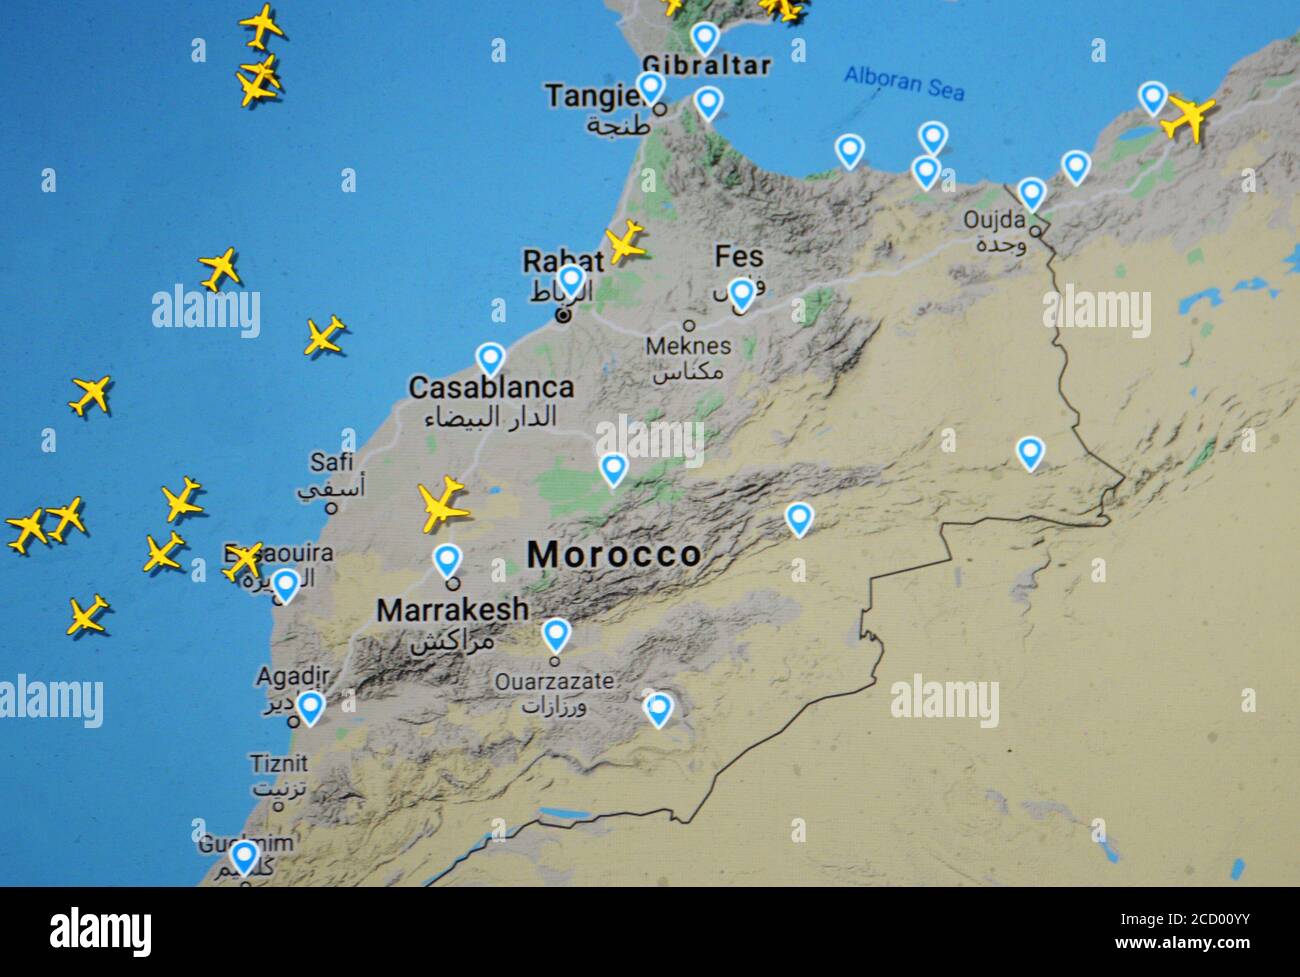 Flugverkehr über Marocco (20. august 2020, UTC 21.36), im Internet mit Flightradar 24 Website, während der Coronavirus Pandemie Periode Stockfoto